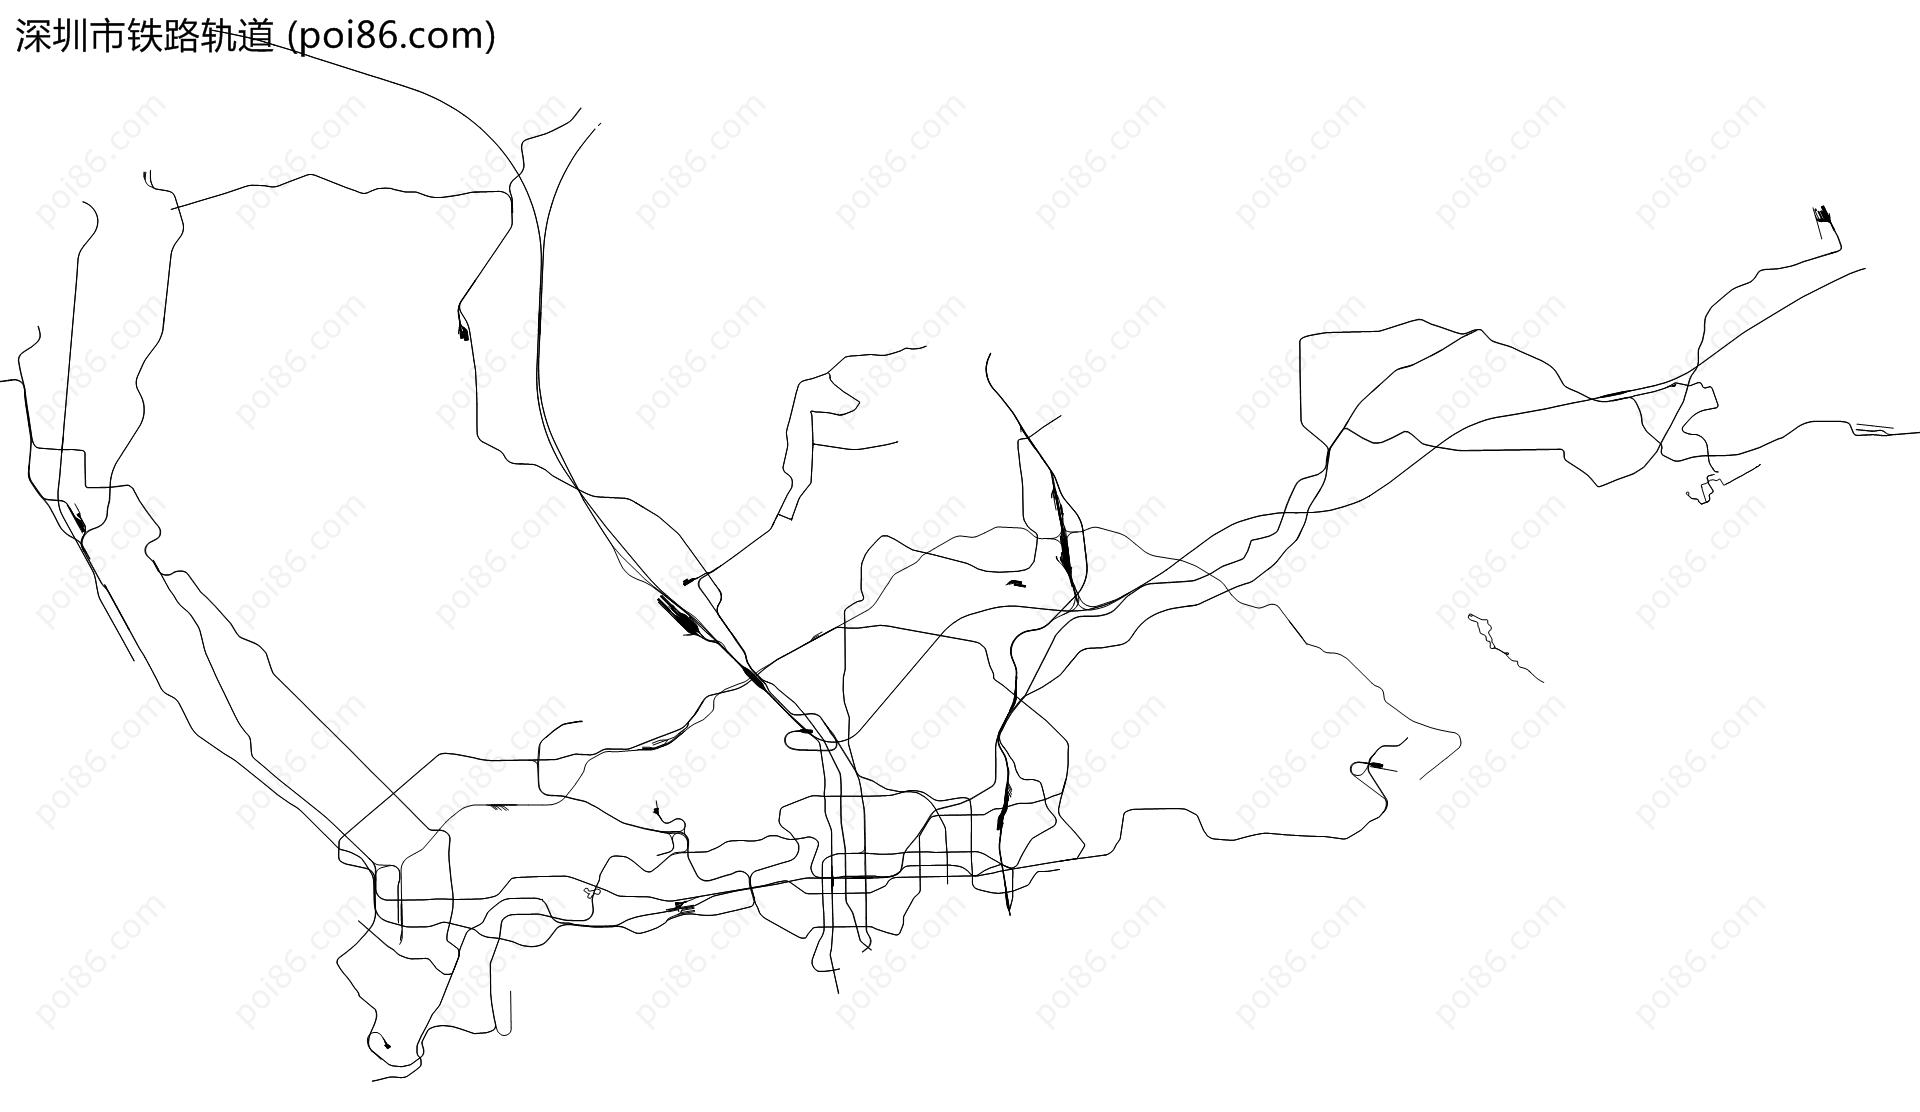 深圳市铁路轨道地图